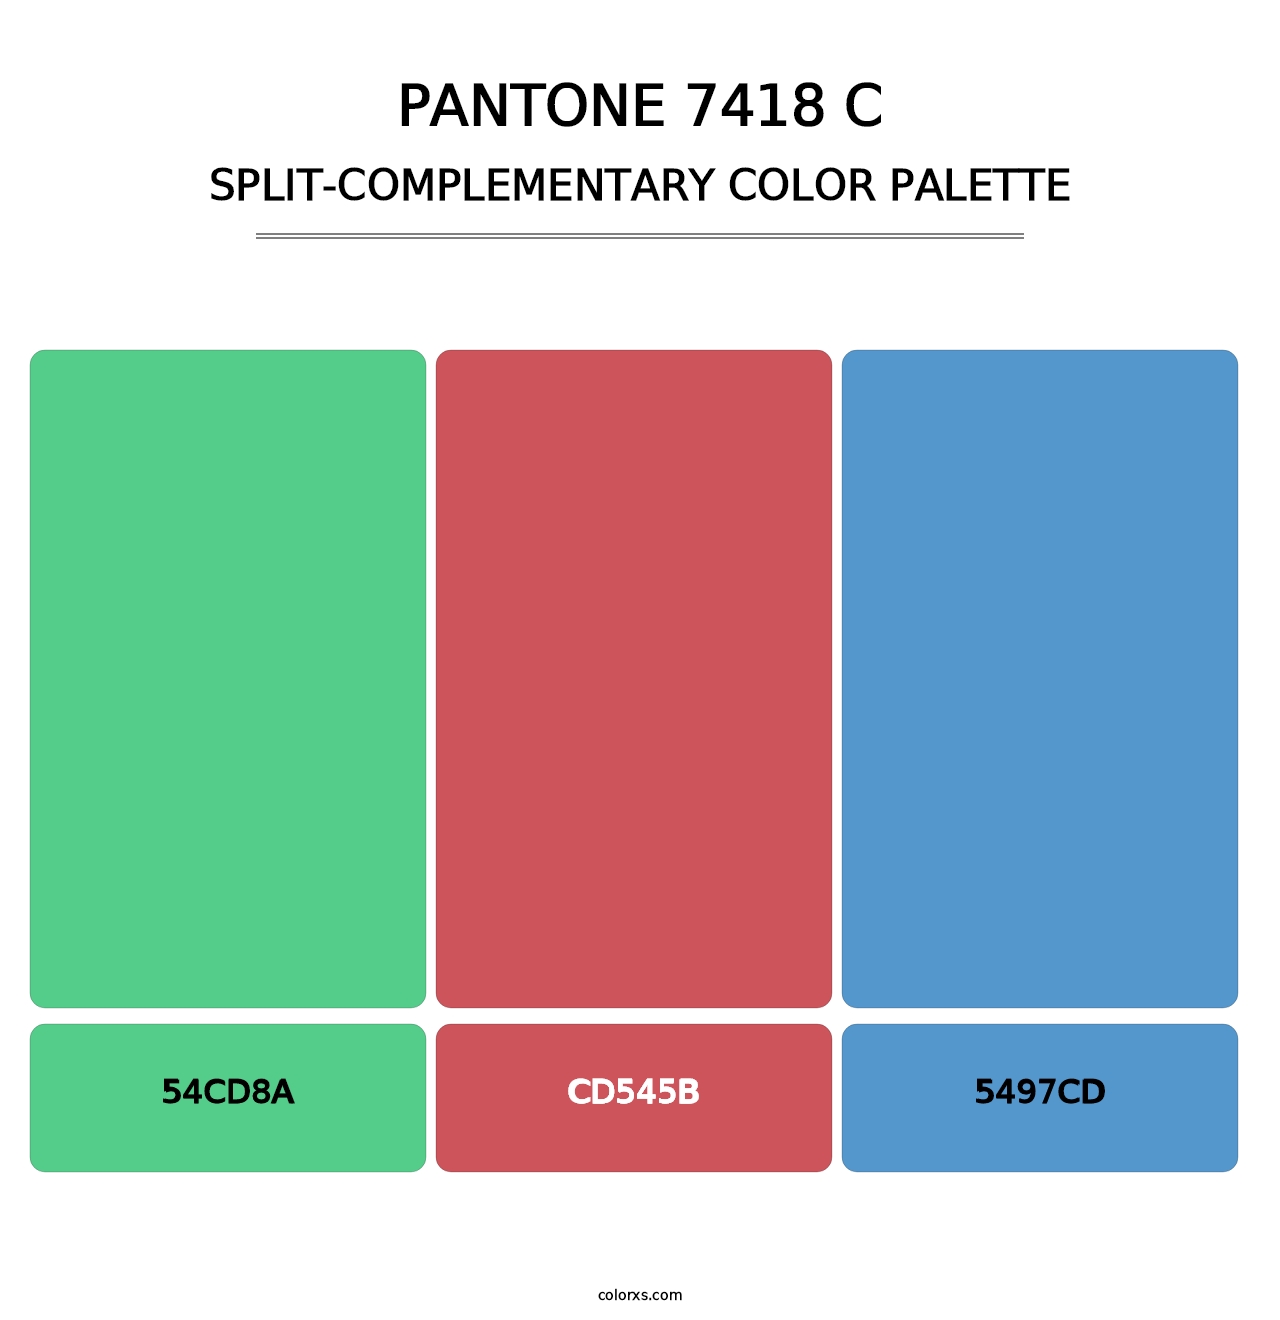 PANTONE 7418 C - Split-Complementary Color Palette